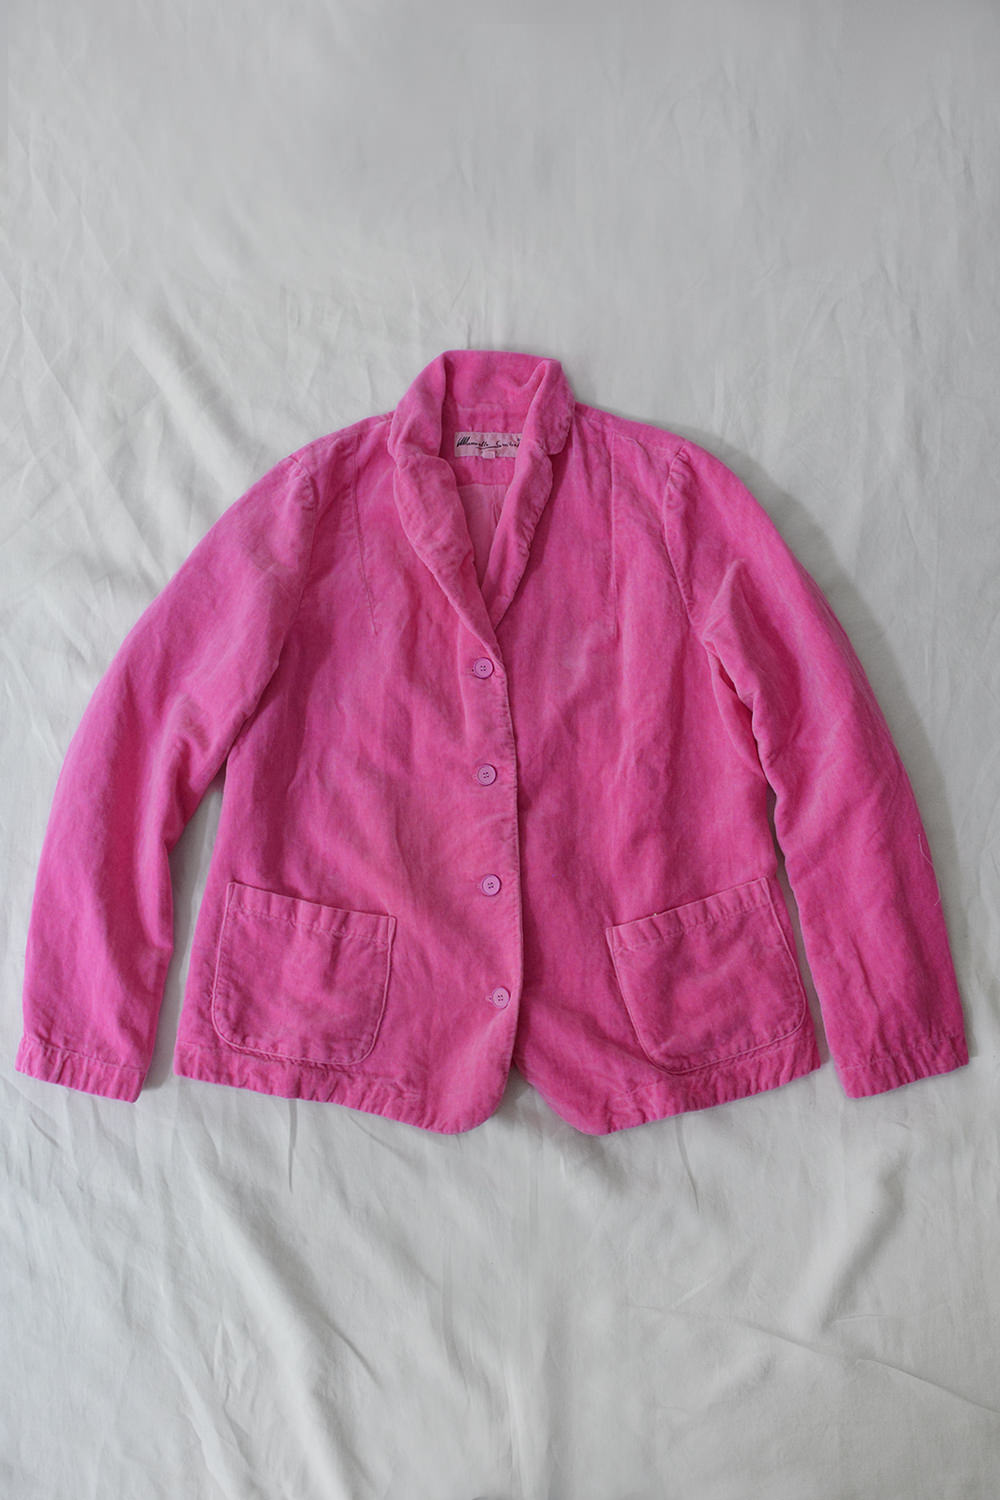 Manuelle Guibal Velvet Jacket Pink Top Picture